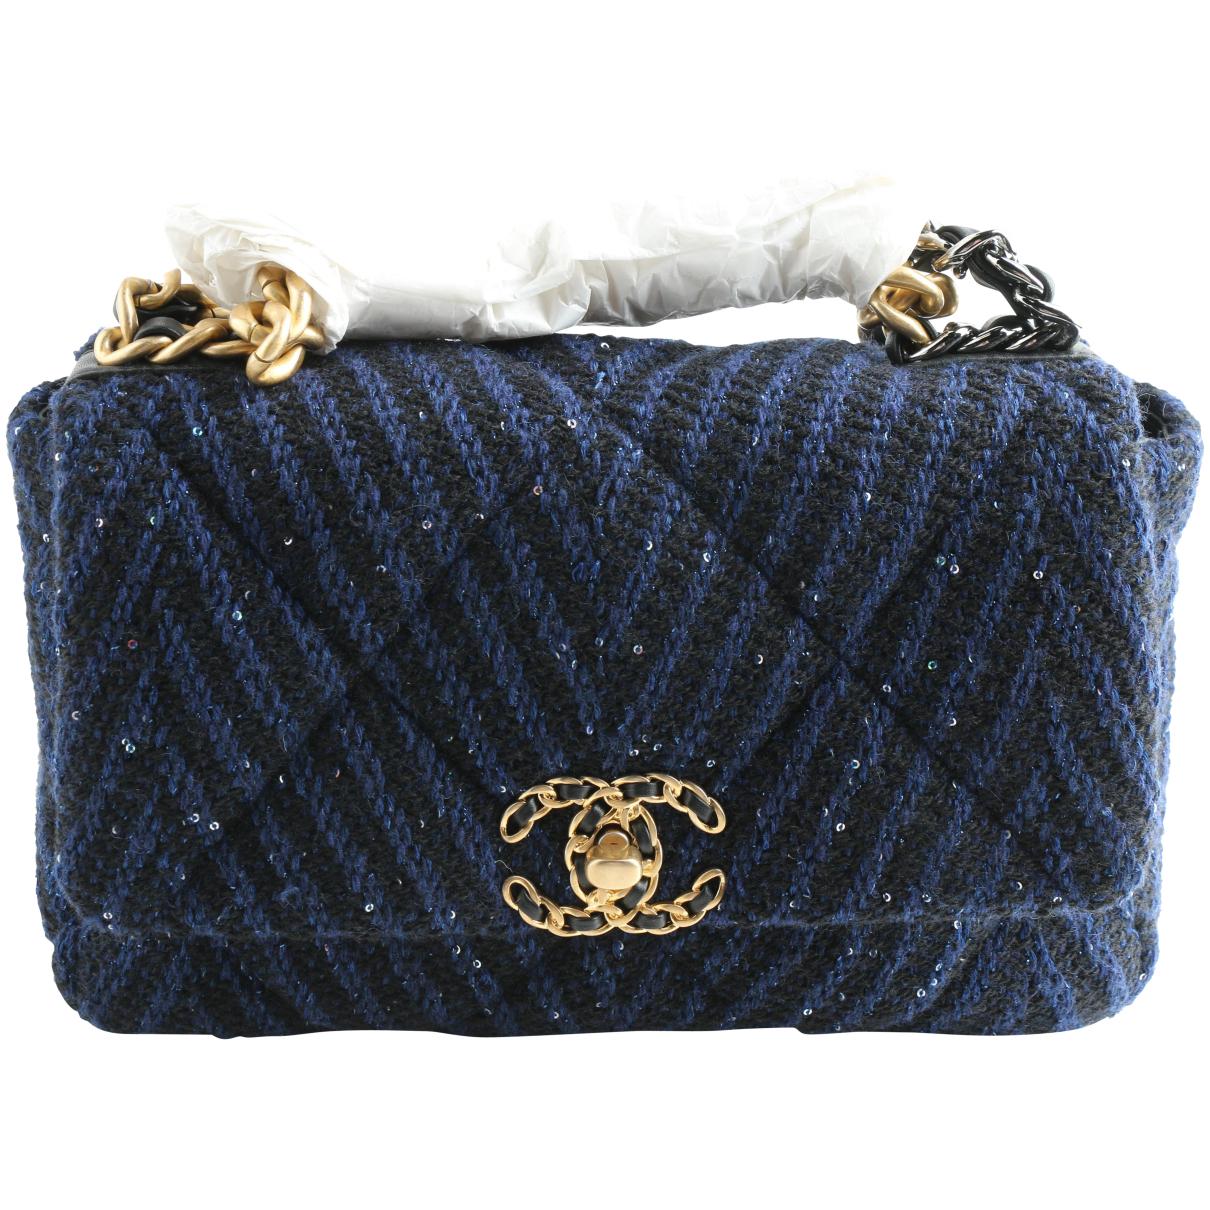 Wallet on chain chanel 19 tweed handbag Chanel Navy in Tweed - 27477205